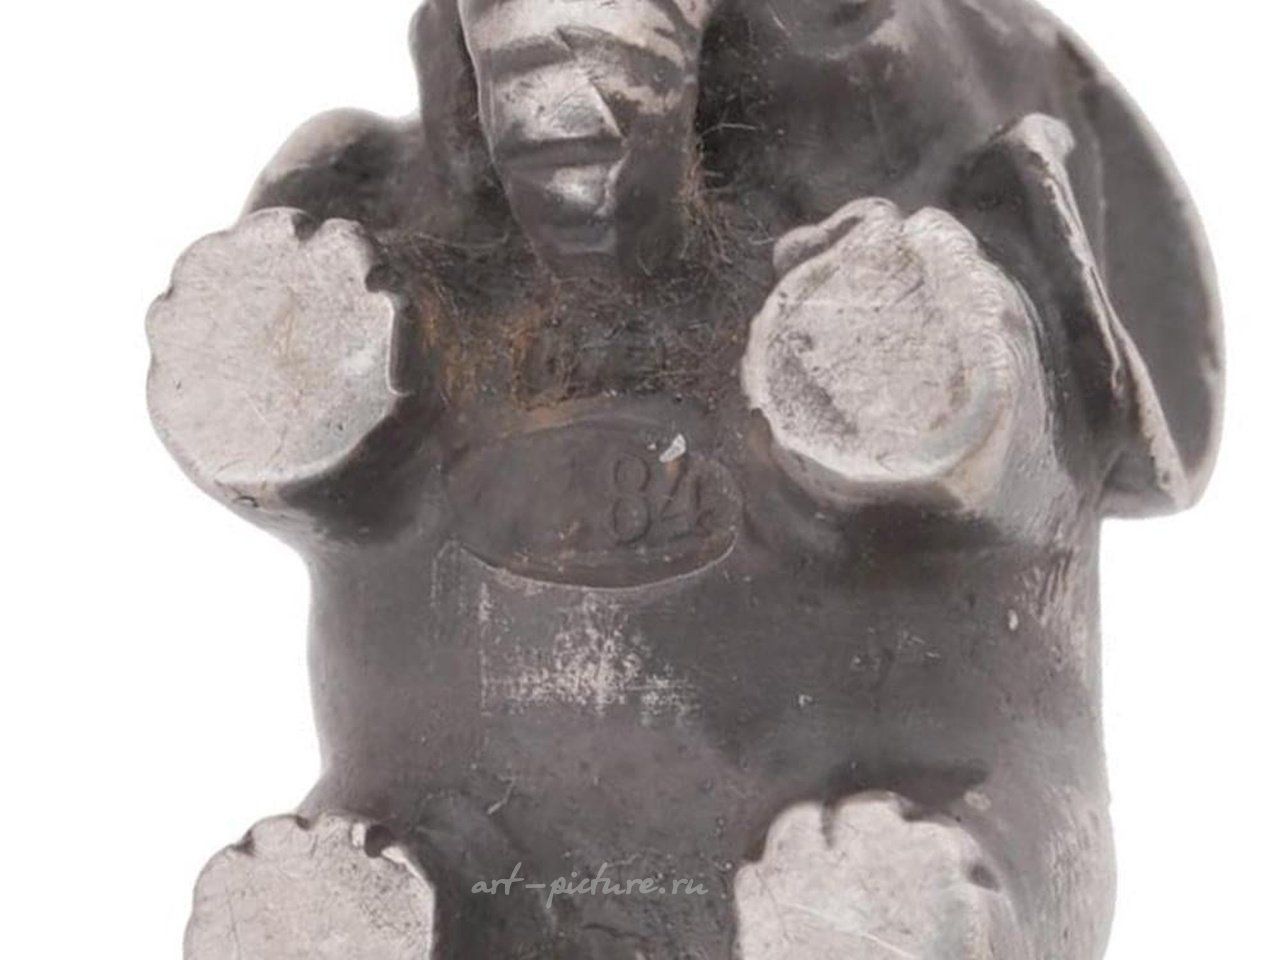 Русское серебро , Серебряная фигурка слона русского серебра 84 с рубиновыми глазами